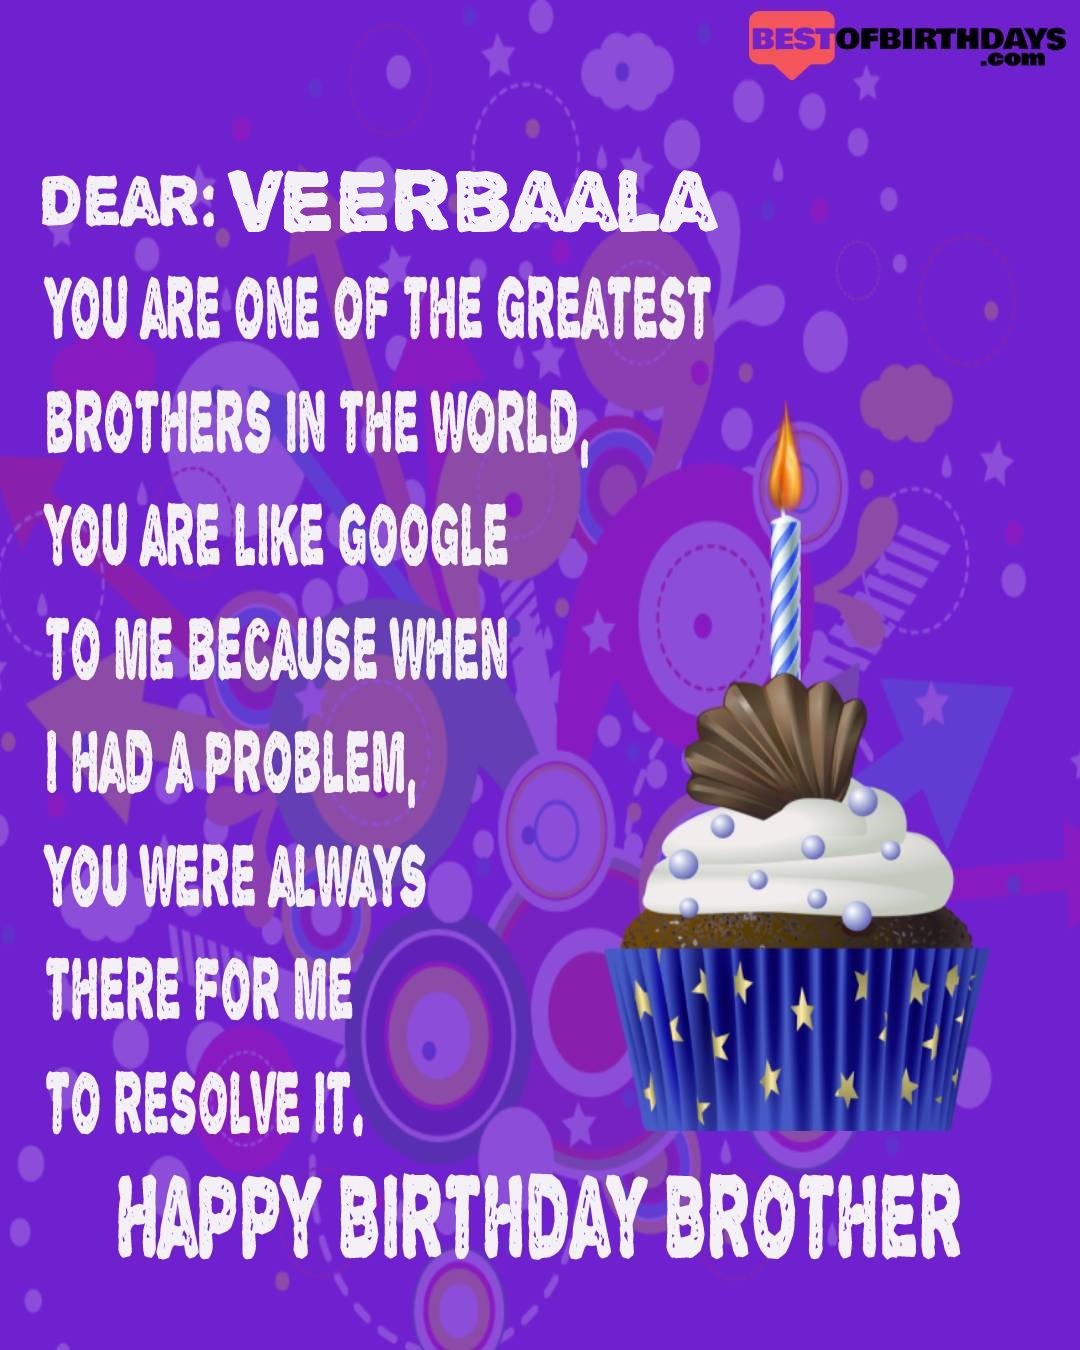 Happy birthday veerbaala bhai brother bro